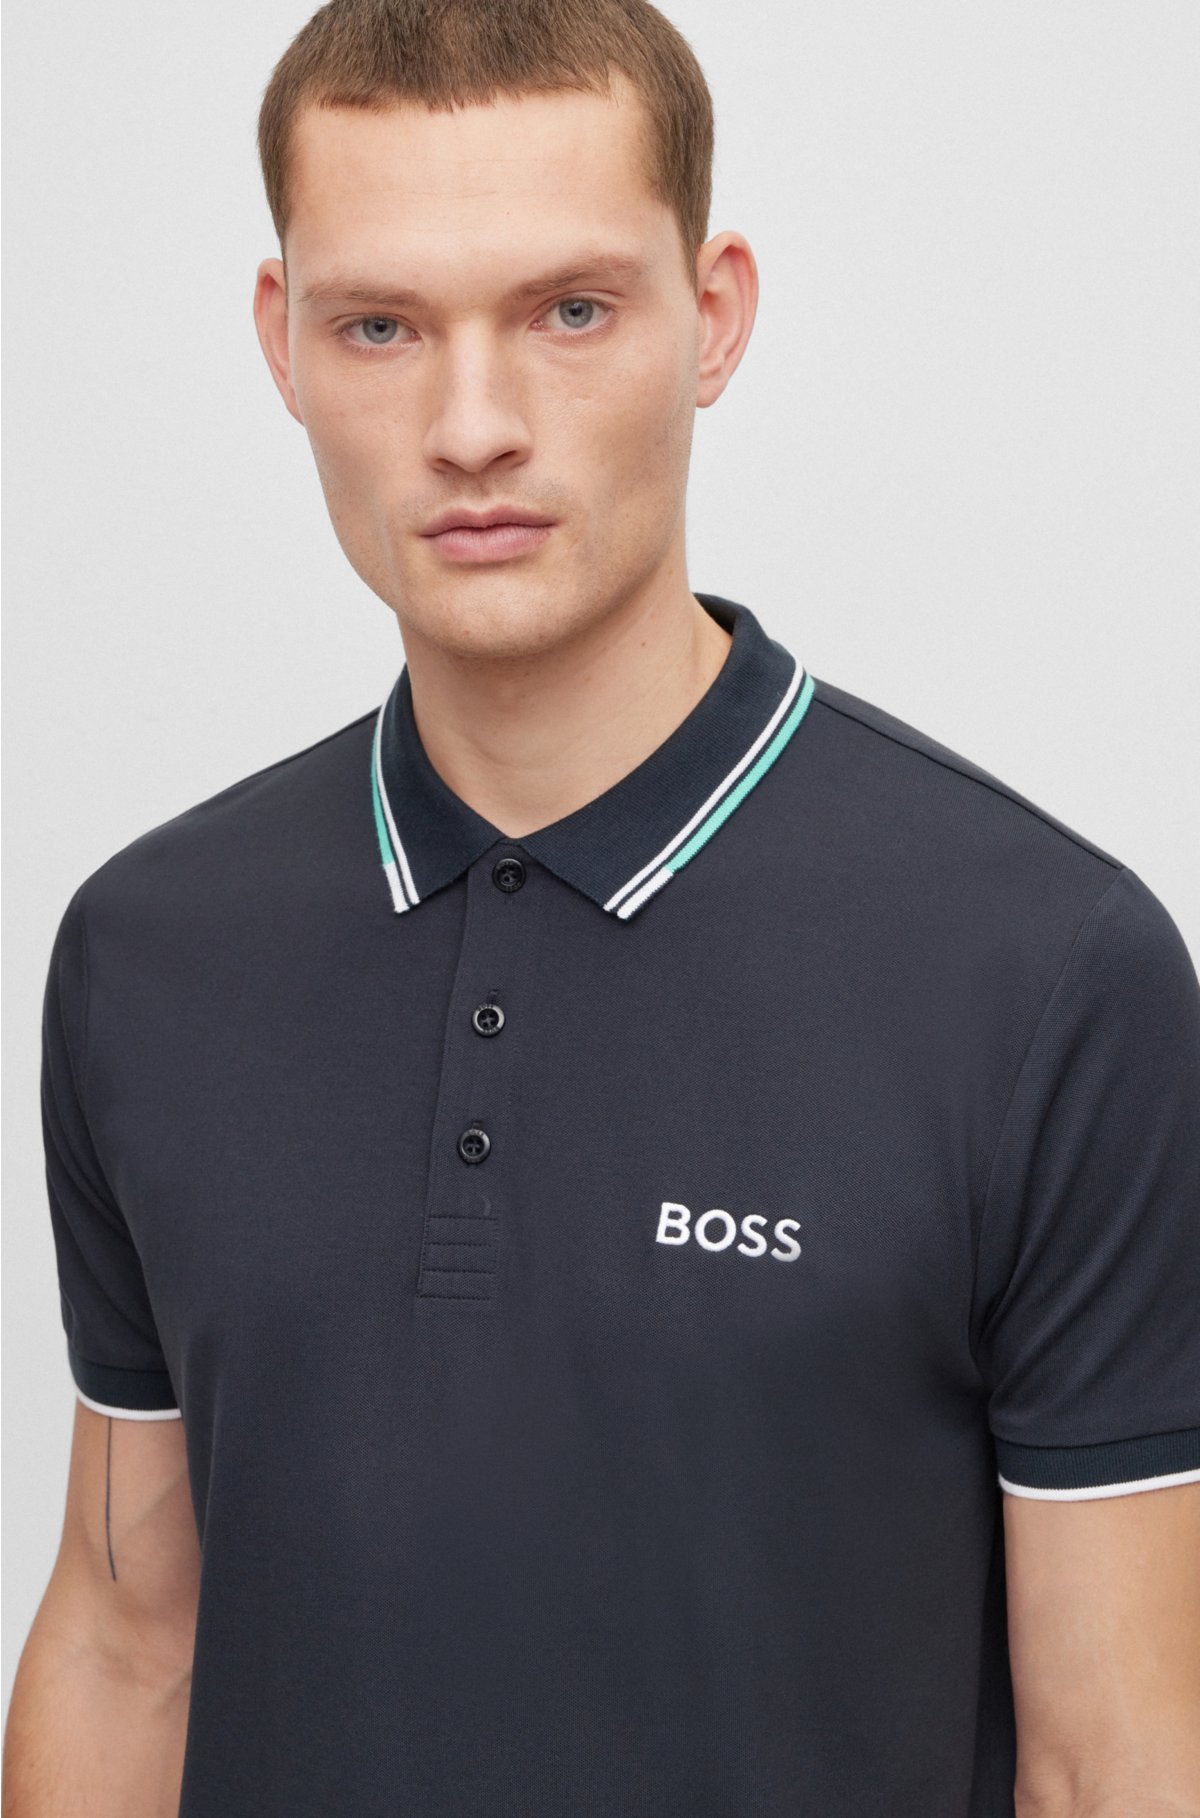 trabajo duro Dos grados Condensar BOSS - Cotton-blend polo shirt with contrast details